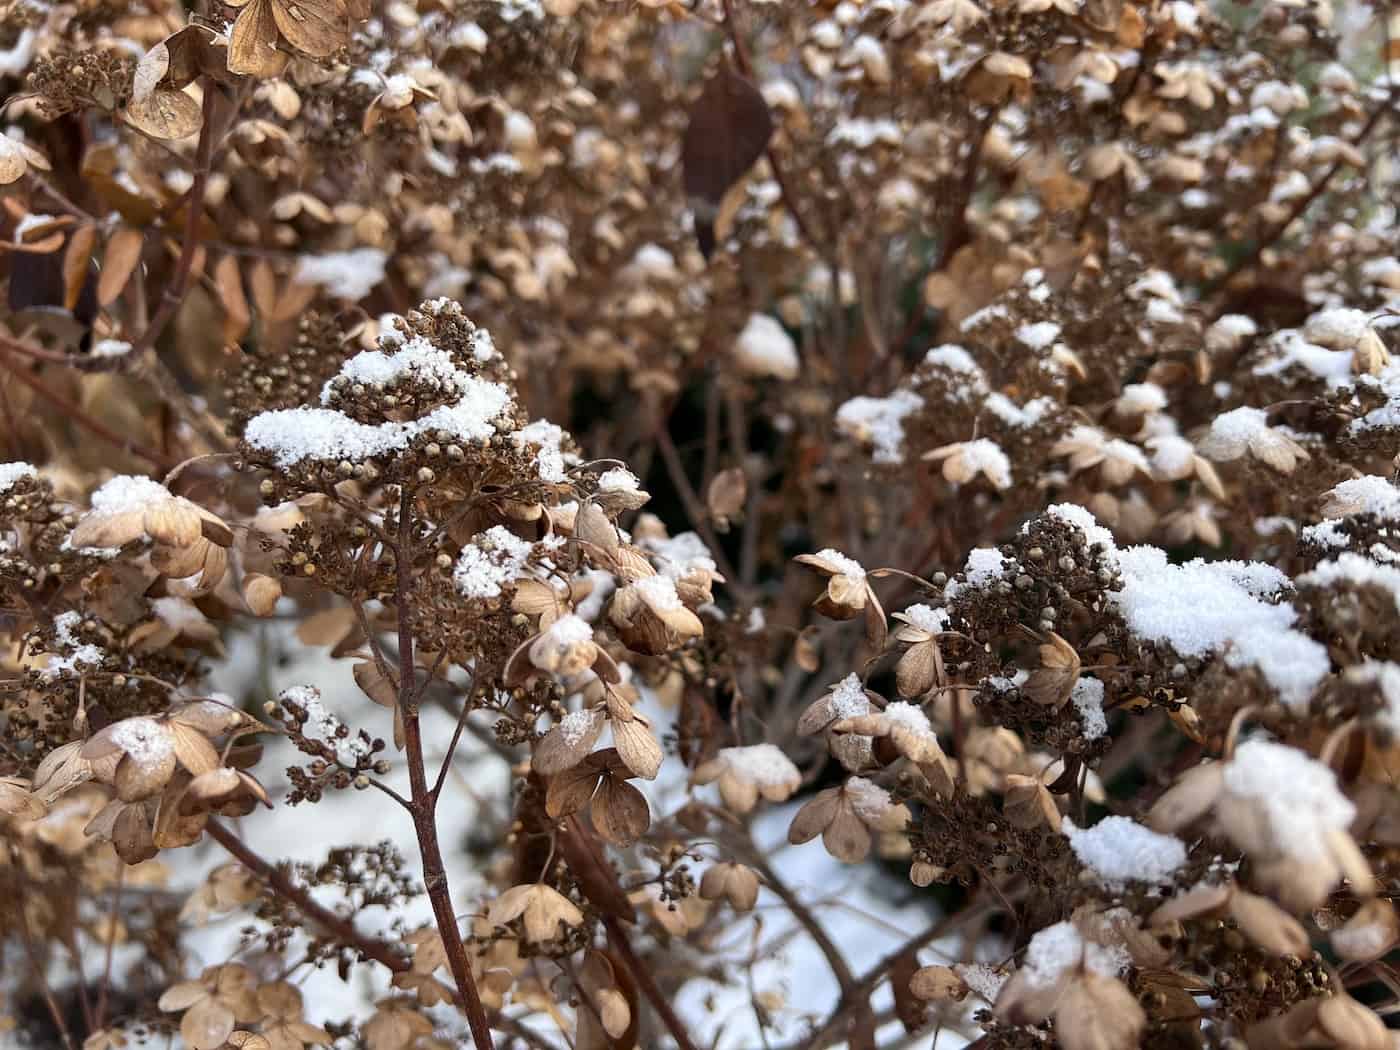 Dried hydrangea flowers in snow